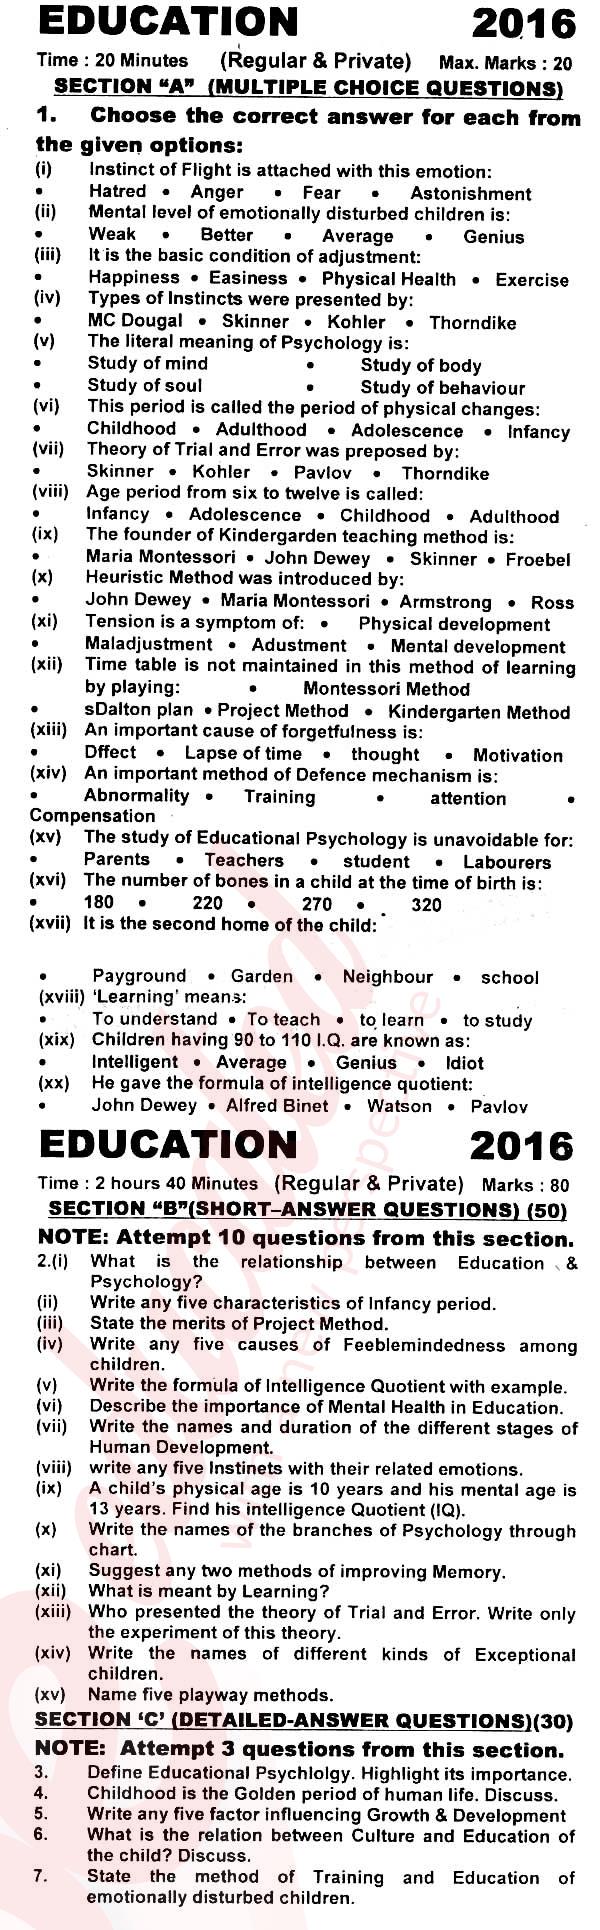 Education FA Part 1 Past Paper Group 1 KPBTE 2016